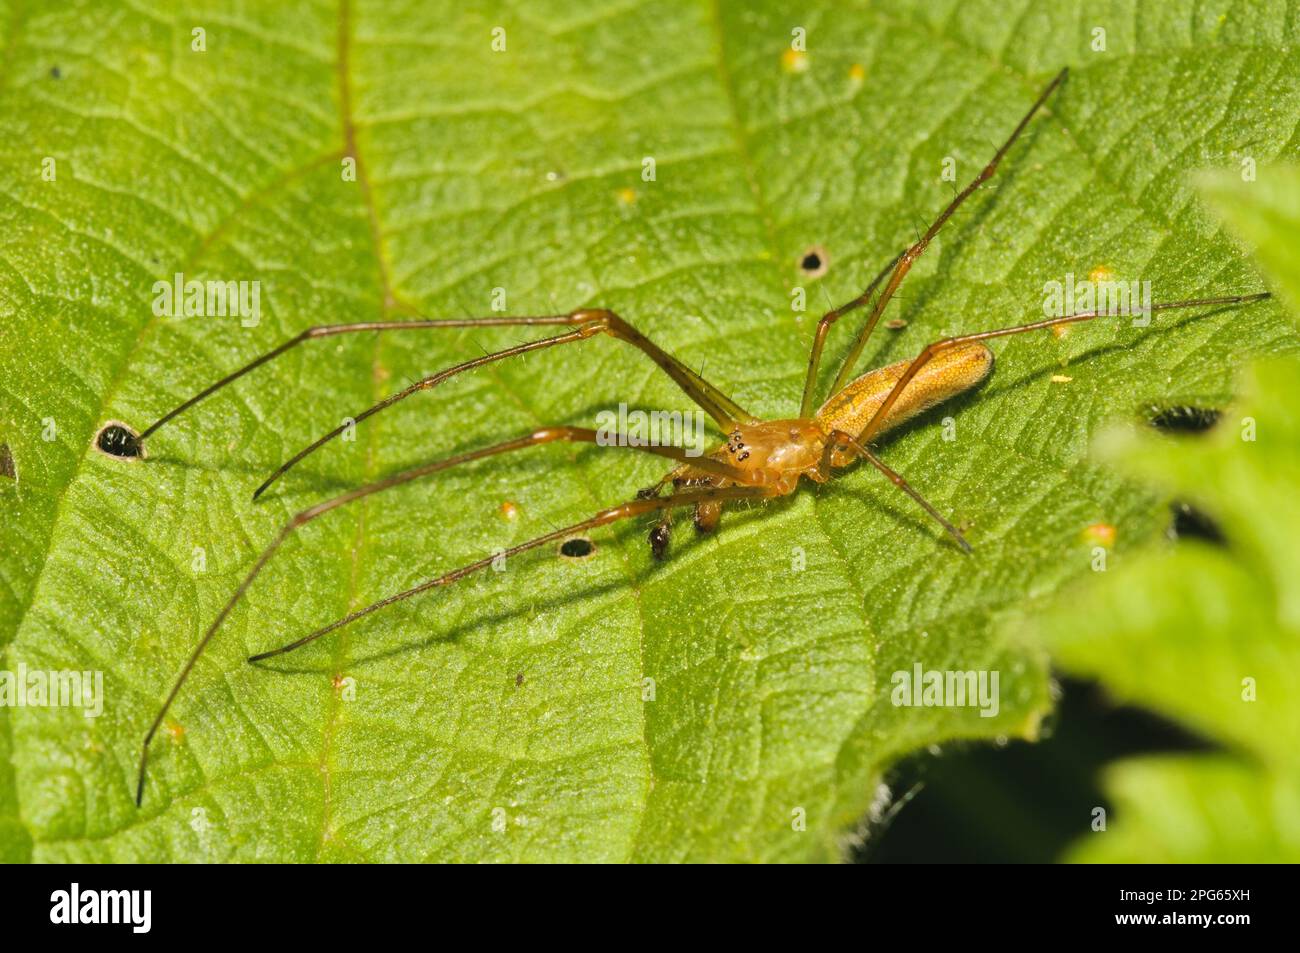 Araignée étirable commune (Tetragnatha extensa) adulte mâle, répartie sur la feuille d'ortie, Rye Meads RSPB Reserve, Hertfordshire, Angleterre, Royaume-Uni Banque D'Images